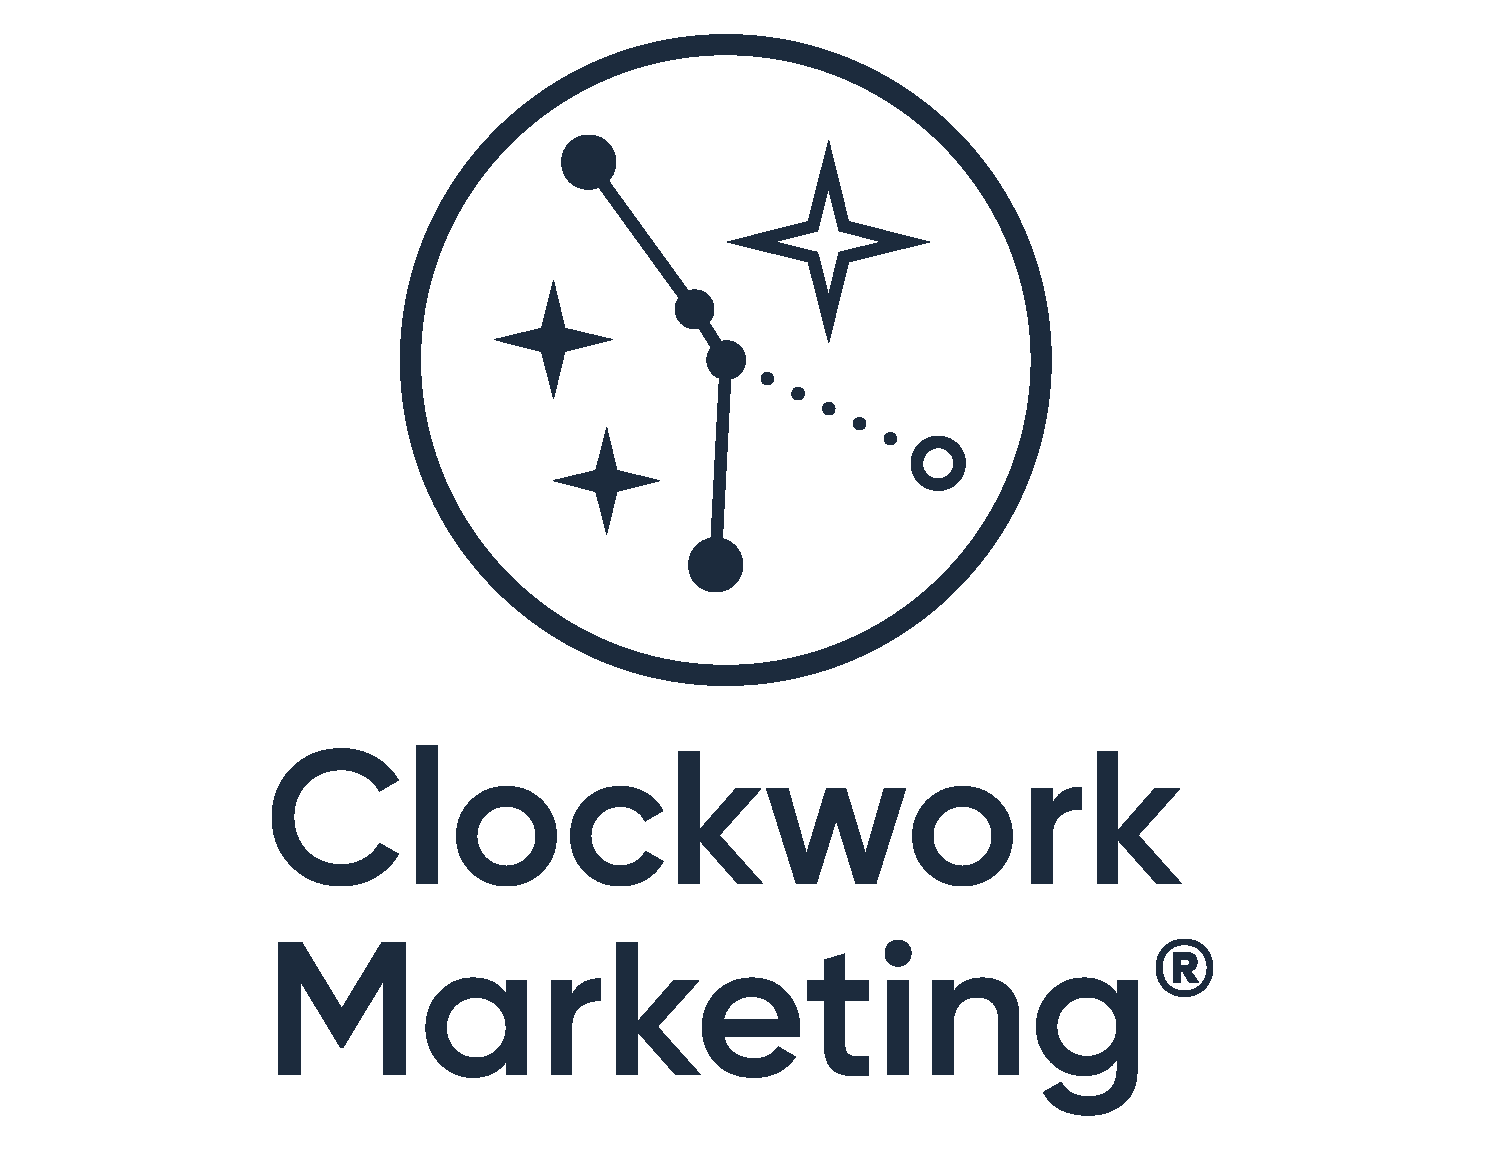 Clockwork Marketing & Gift Voucher Brilliance